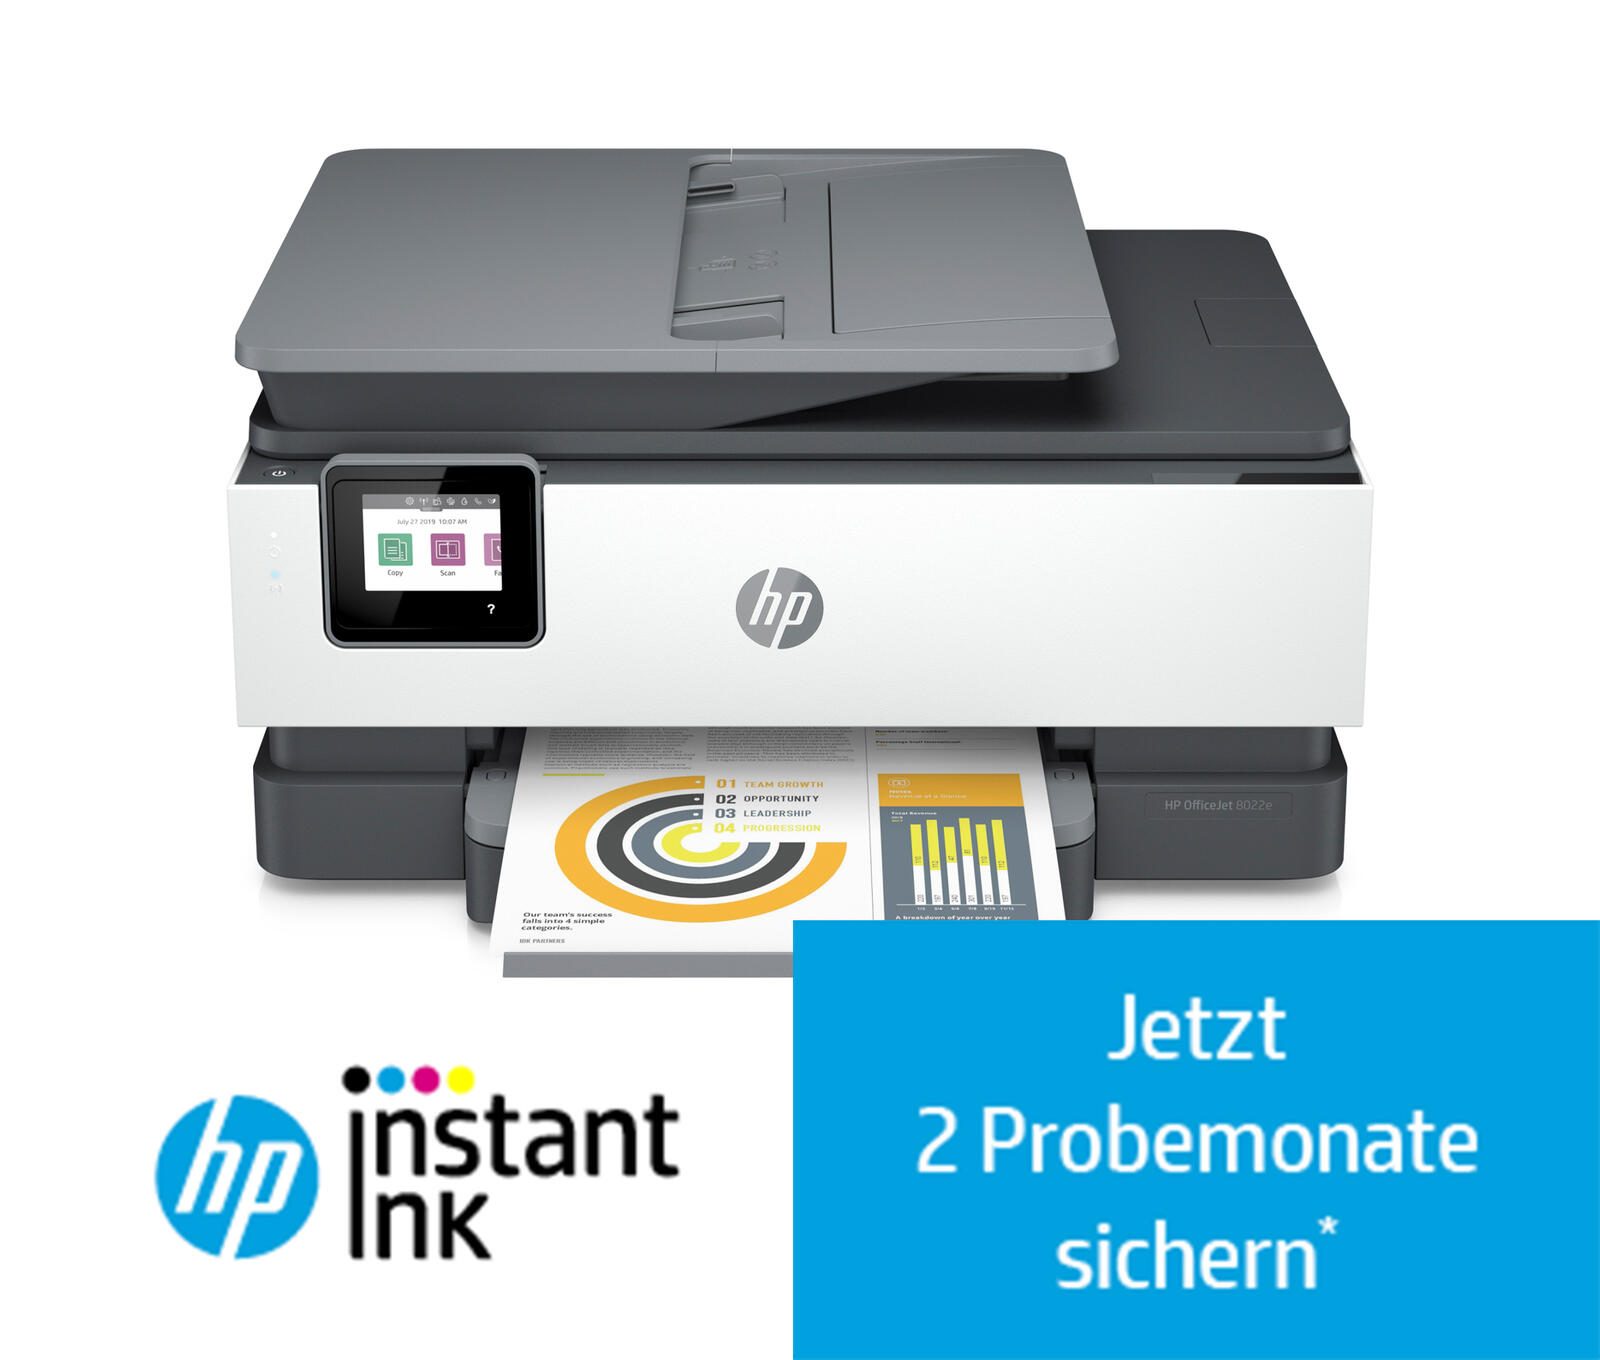 HP OfficeJet Pro 8022